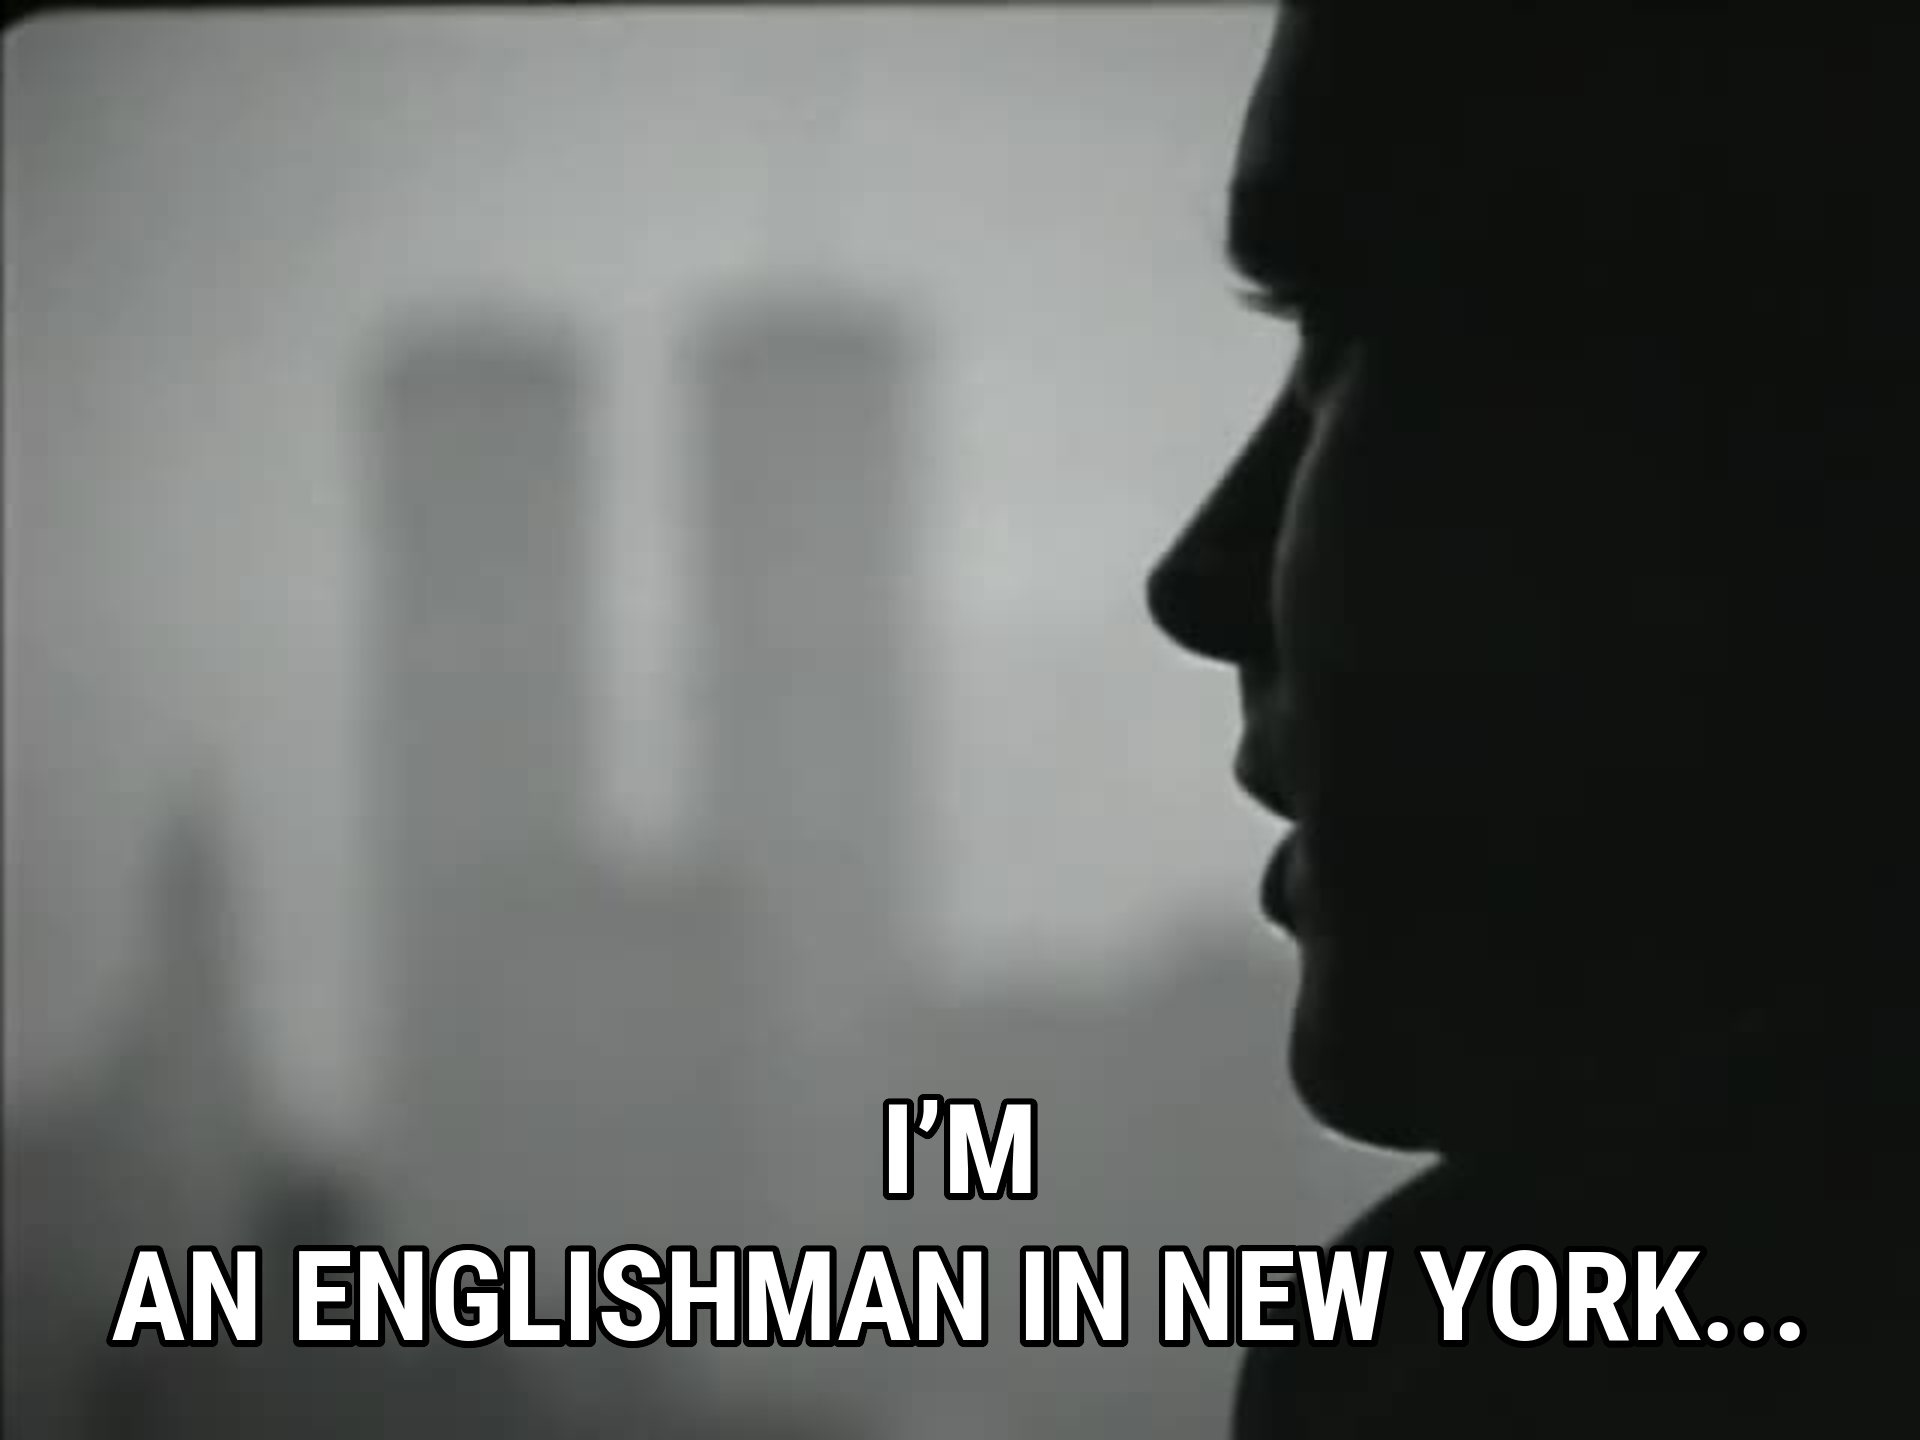 Инглиш мен ин. Englishman in New York. I M A Englishman in New York. Sting Englishman in New York обложка. Стинг Englishman in New York.